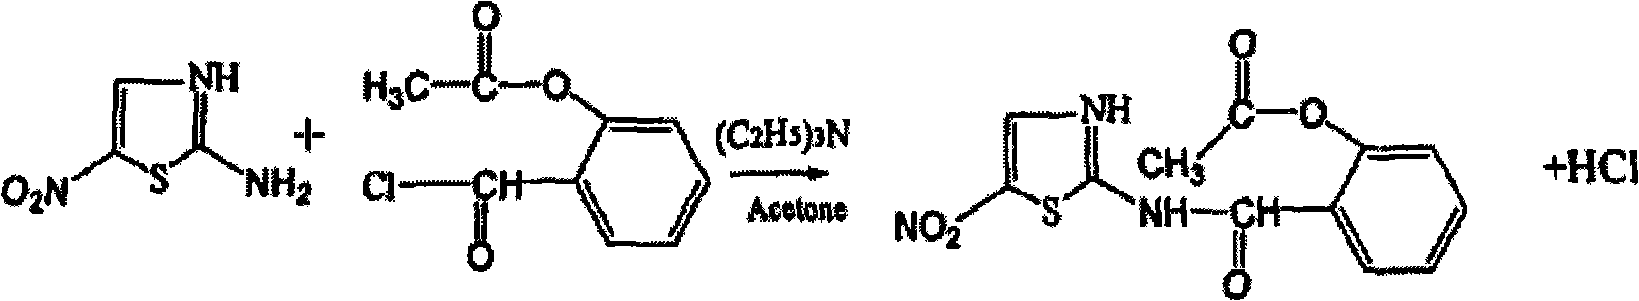 Preparation method of nitazoxanide